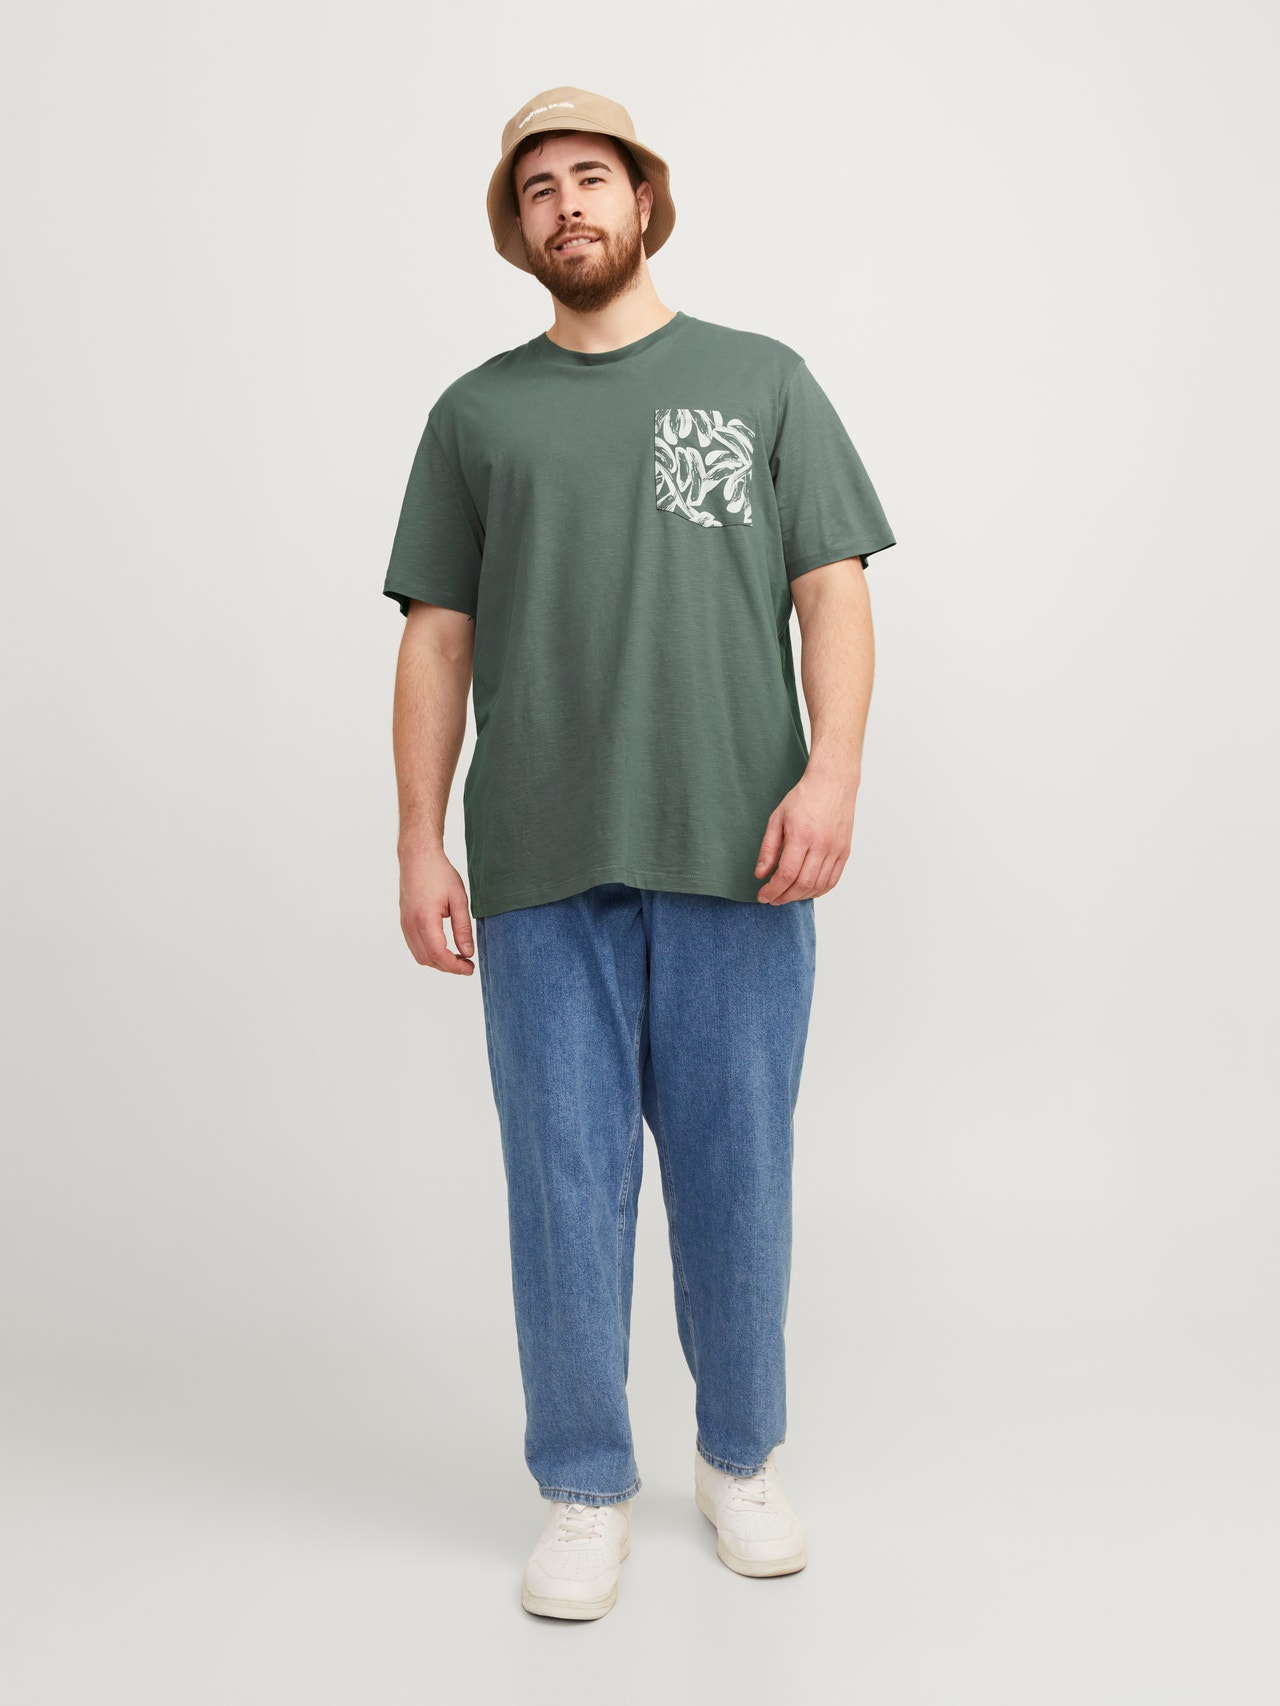 Jack & Jones Plus Size T-shirt Stampato -Laurel Wreath - 12257516